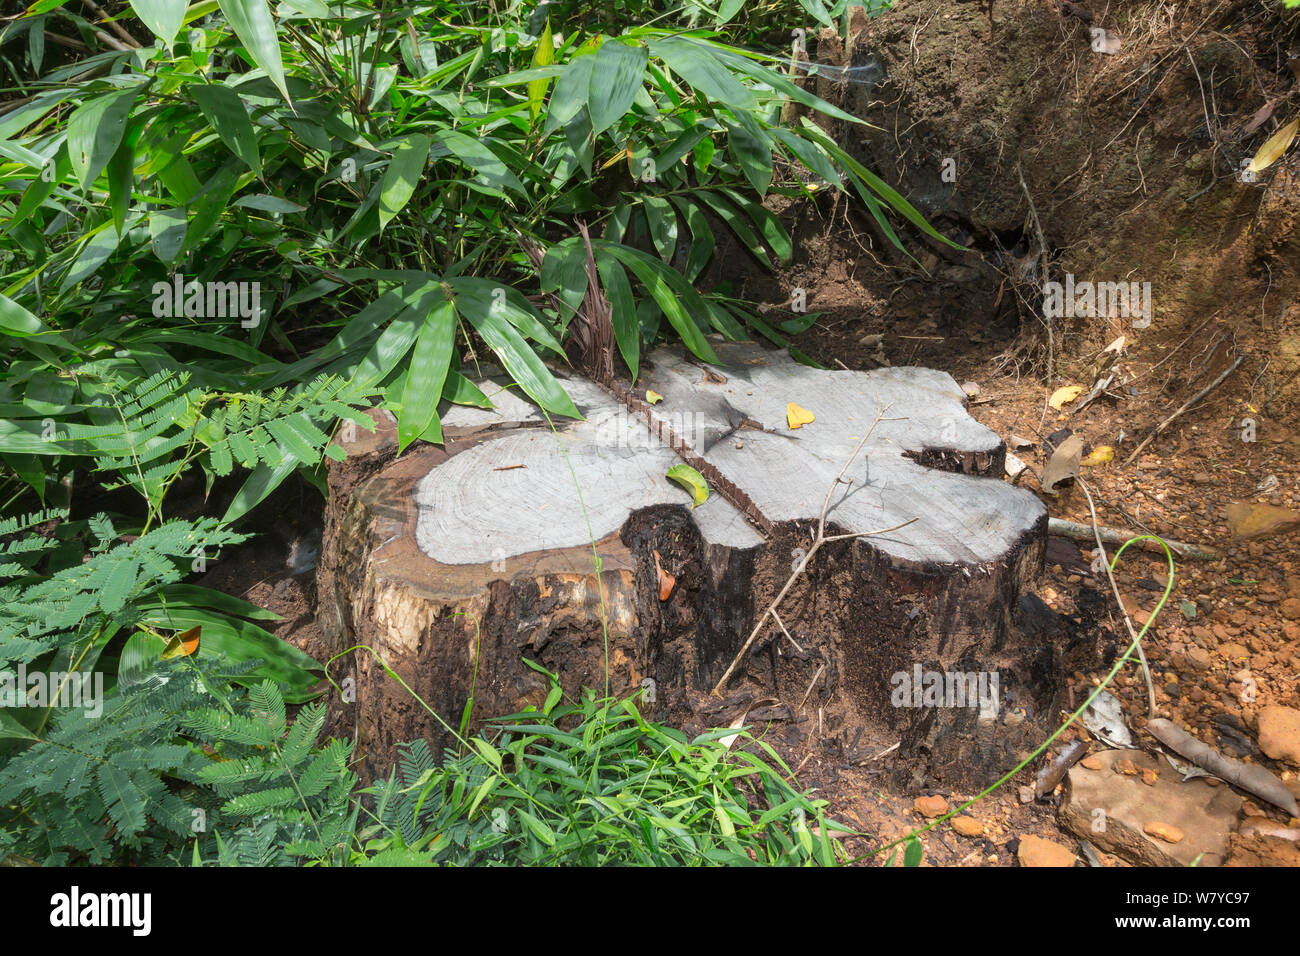 Moignon de Siam rosewood Dalbergia cochinchinensis (arbre) abattus par des braconniers, Thap Lan National Park, Complexe forestier de Dong Phayayen-Khao Yai, Thaïlande, de l'est août. Banque D'Images